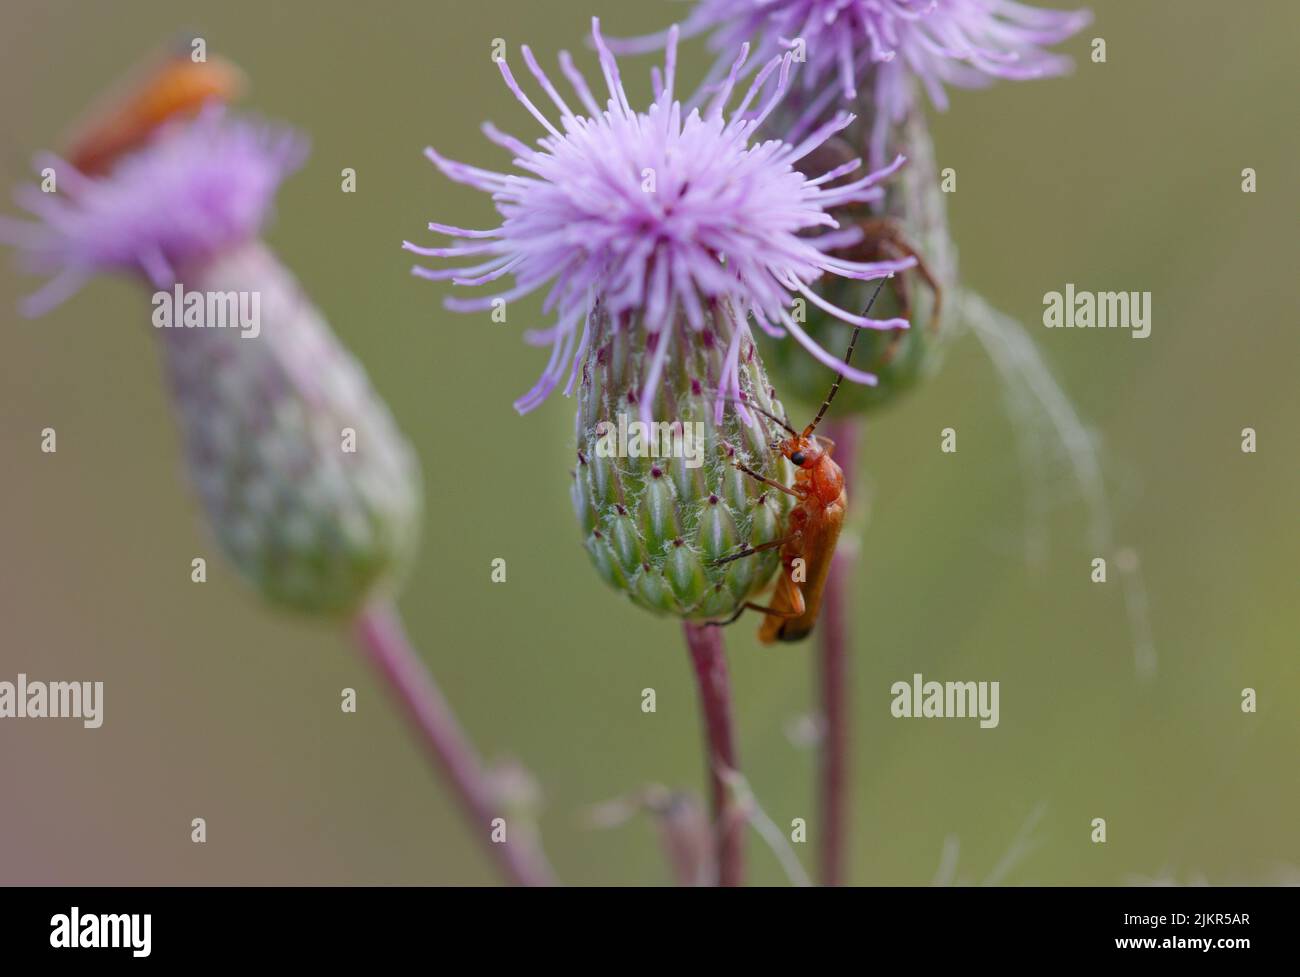 Makro-Fotografie eines wilden Tieres auf einer Kornblume Stockfoto